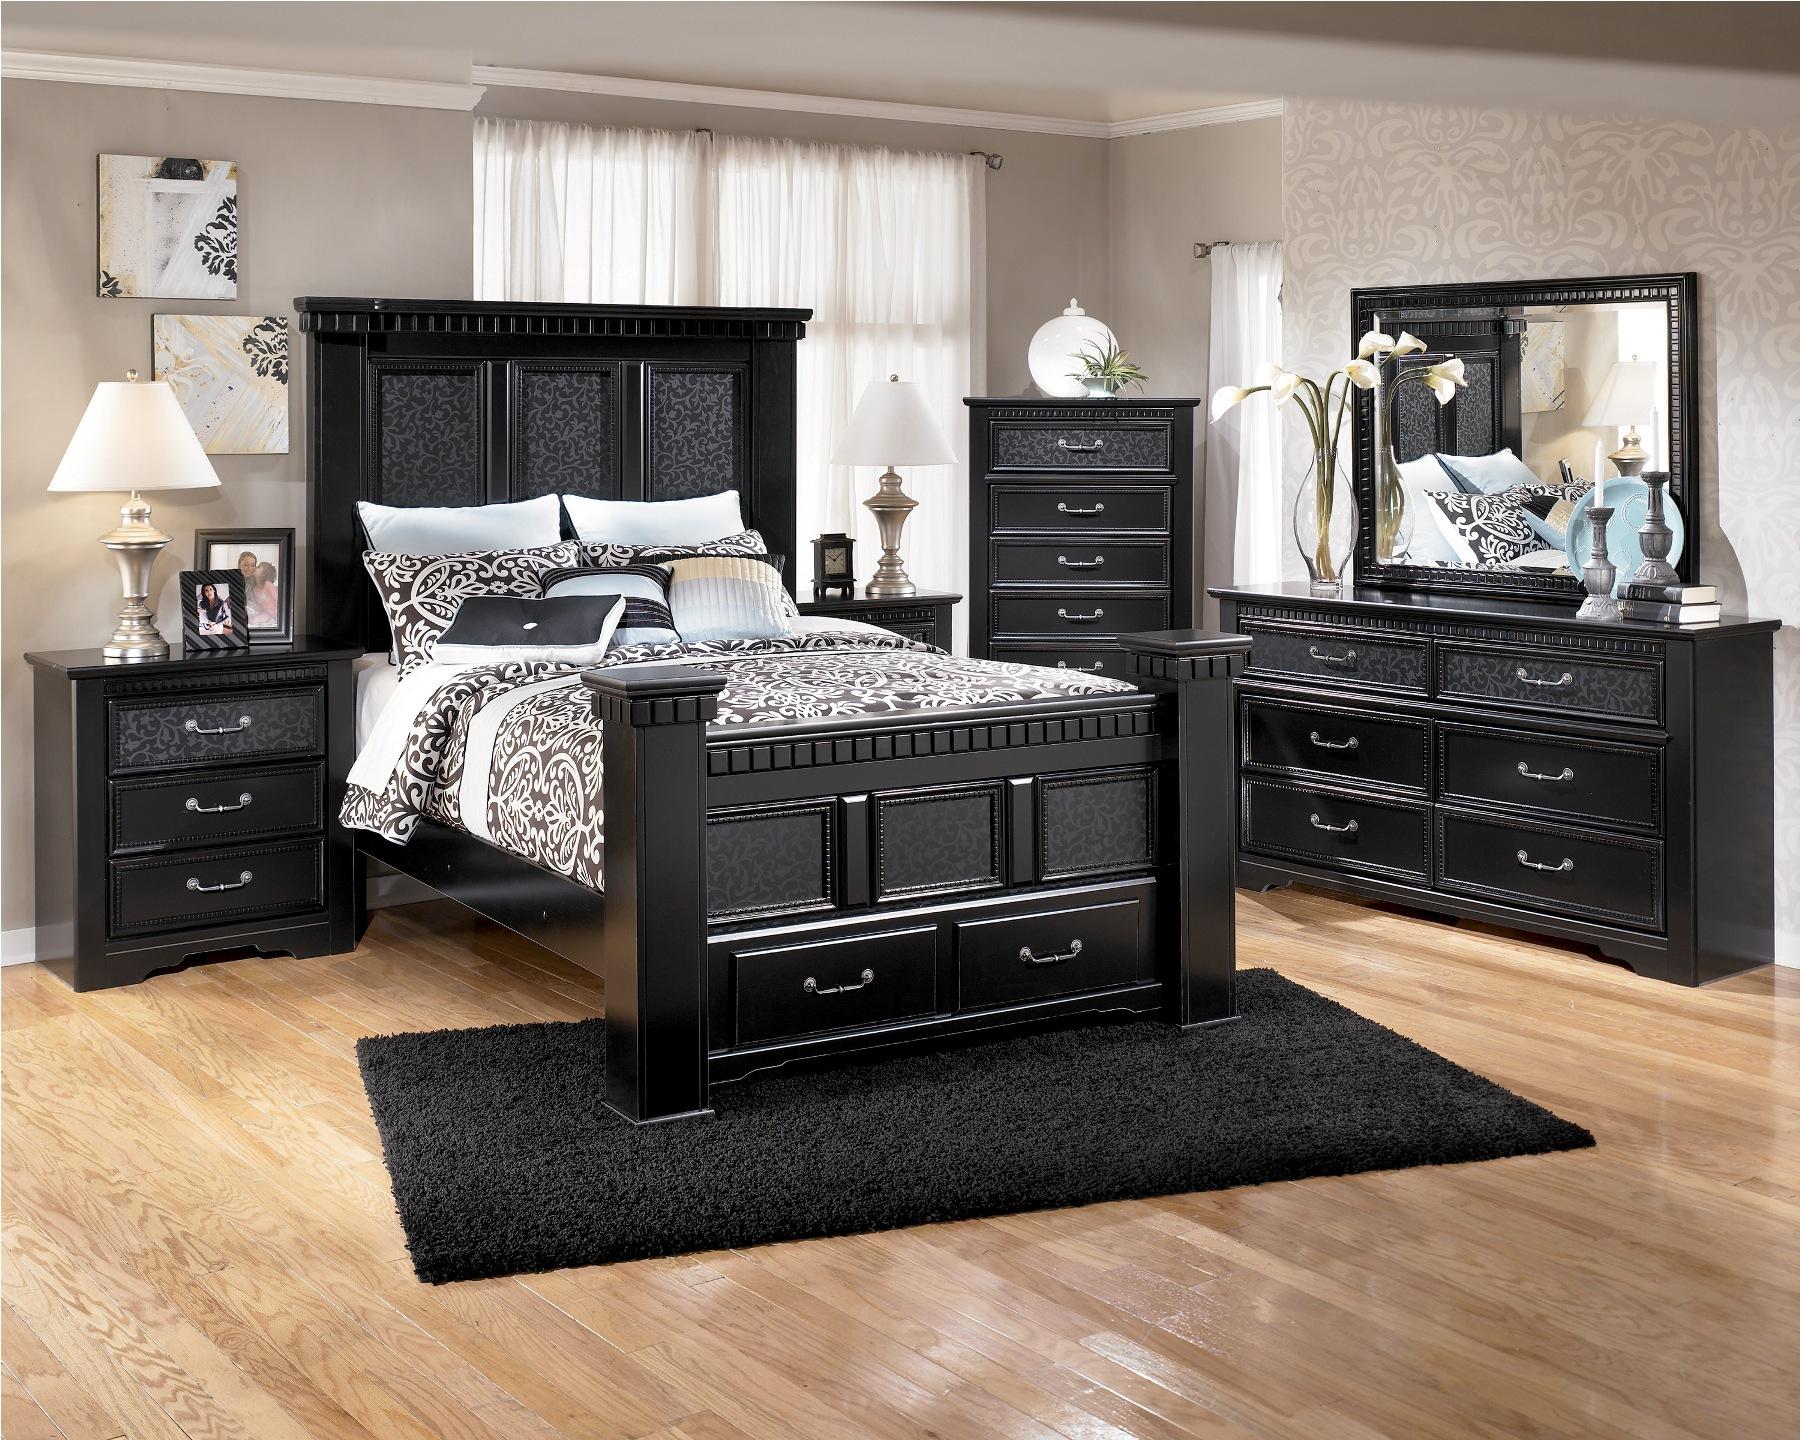 Furniture Black Bedroom Set1 